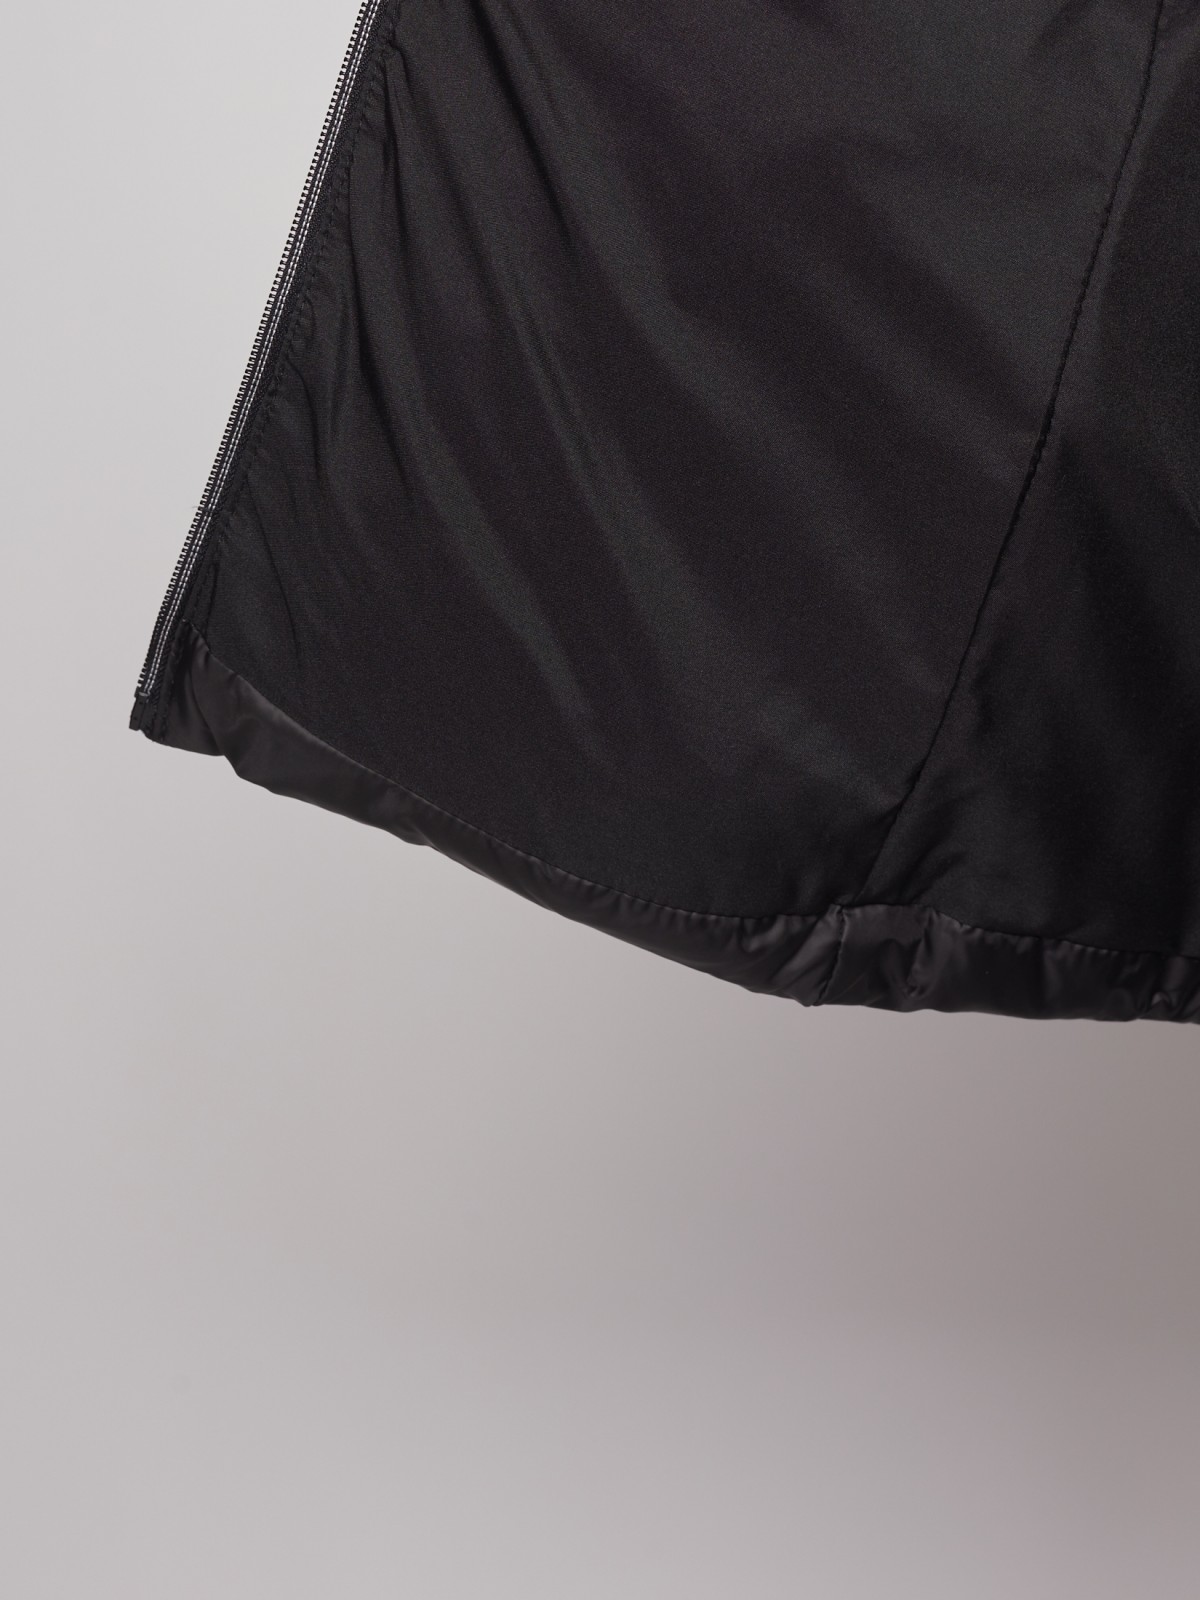 Утеплённая стёганая куртка с капюшоном zolla 022335112044, цвет черный, размер S - фото 4